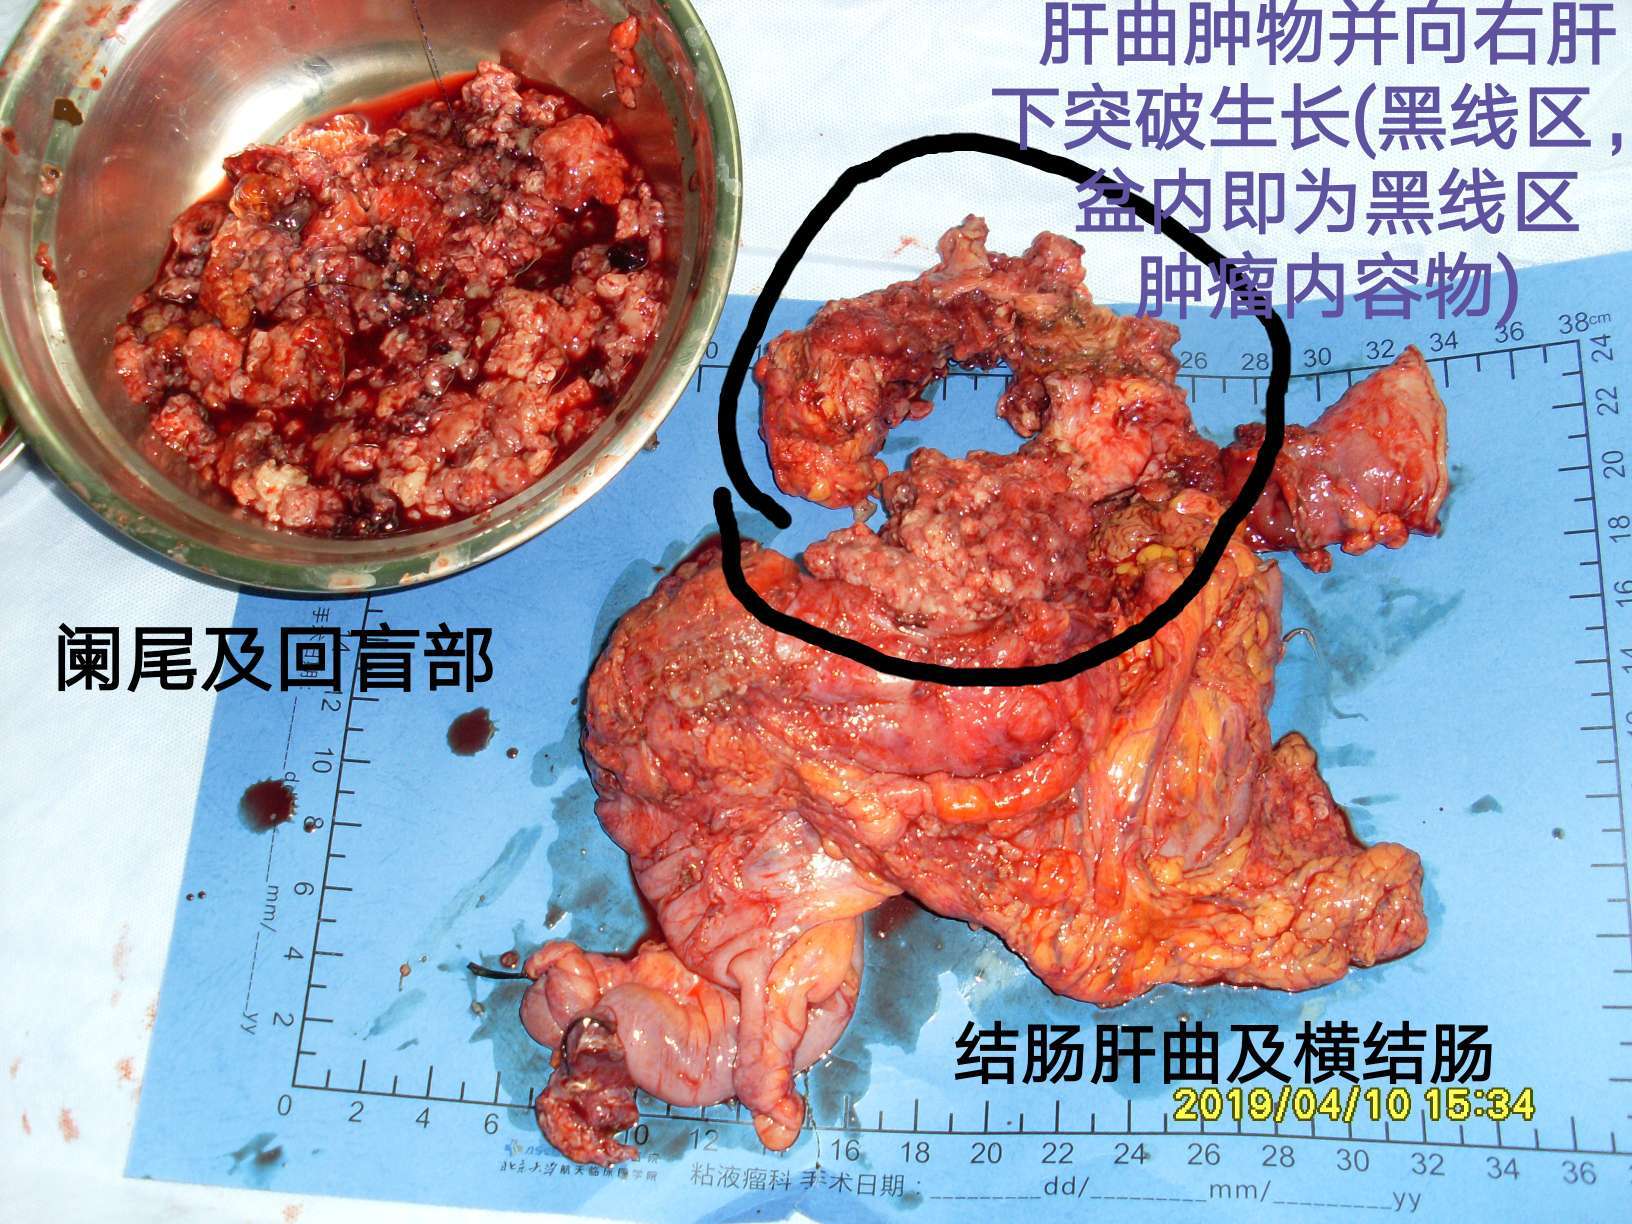 病例40结肠肝曲粘液腺癌突破肠管向外生长